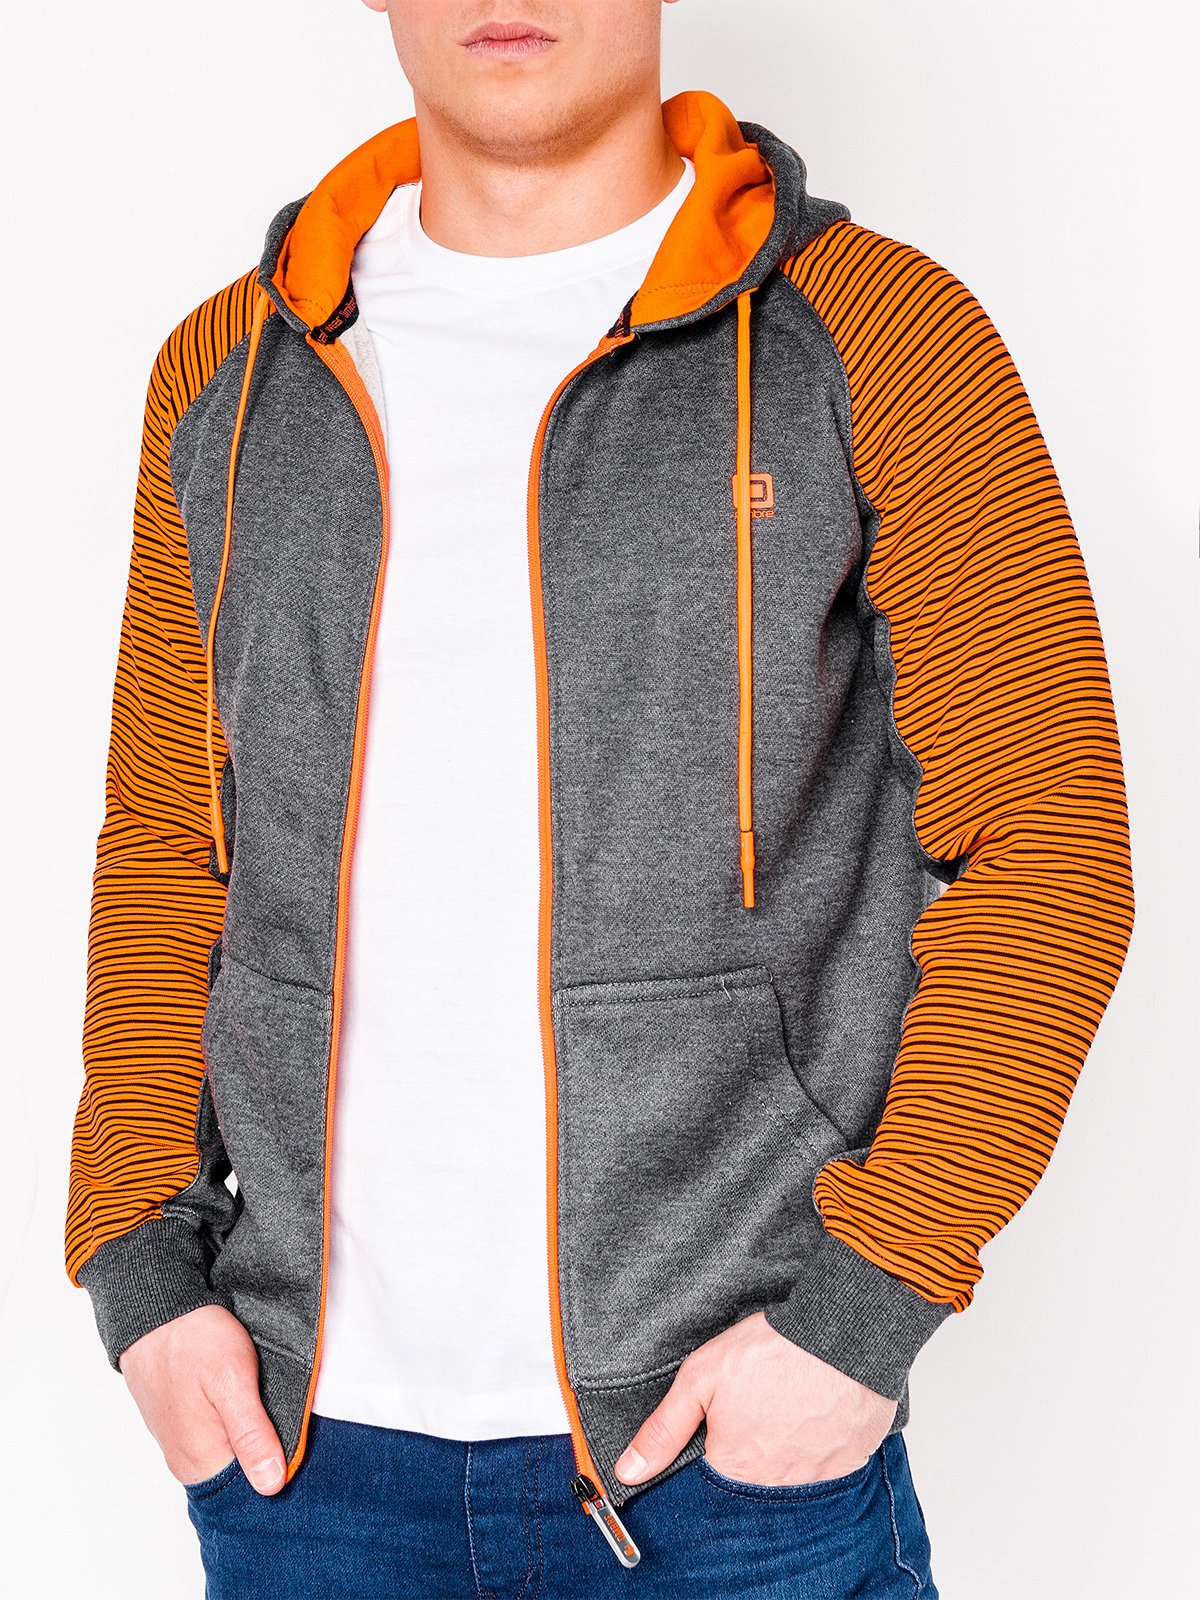 Buy > men orange hoodie > in stock